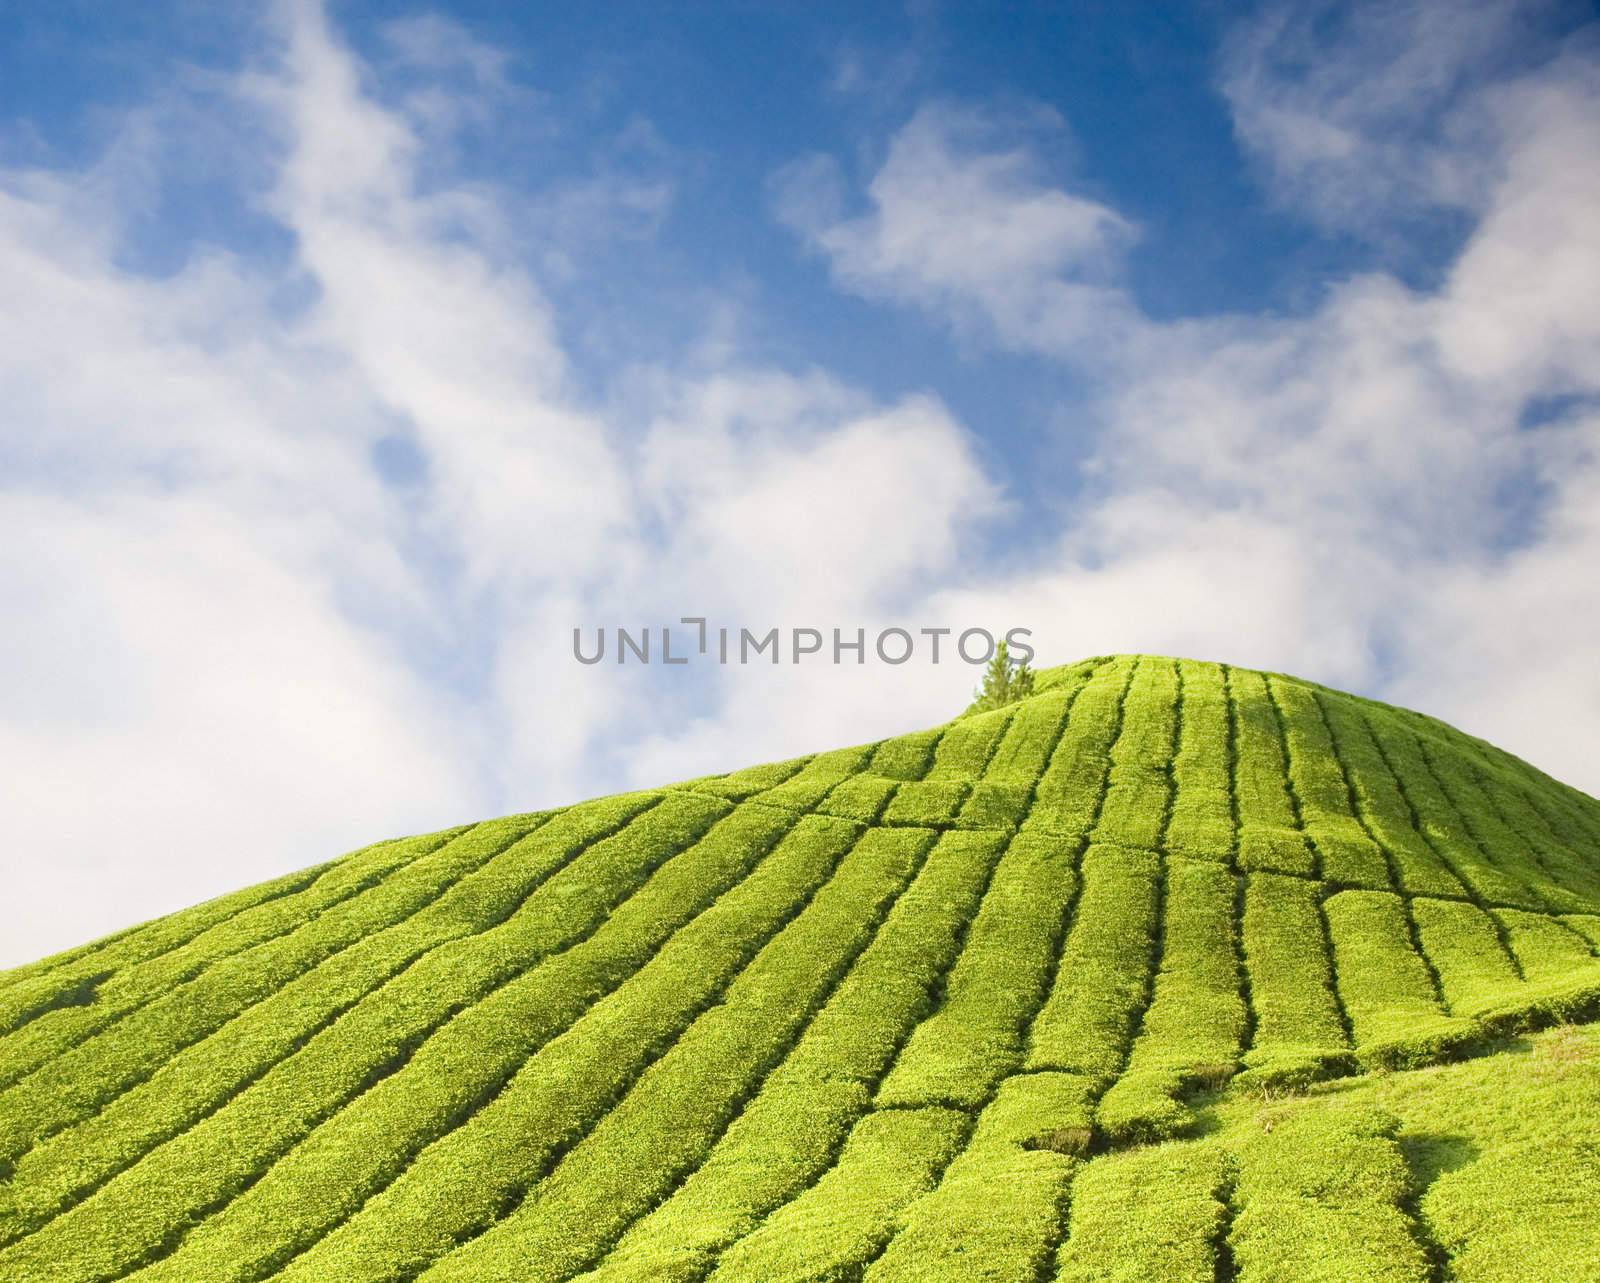 Tea plantation at Cameron Highland Malaysia 